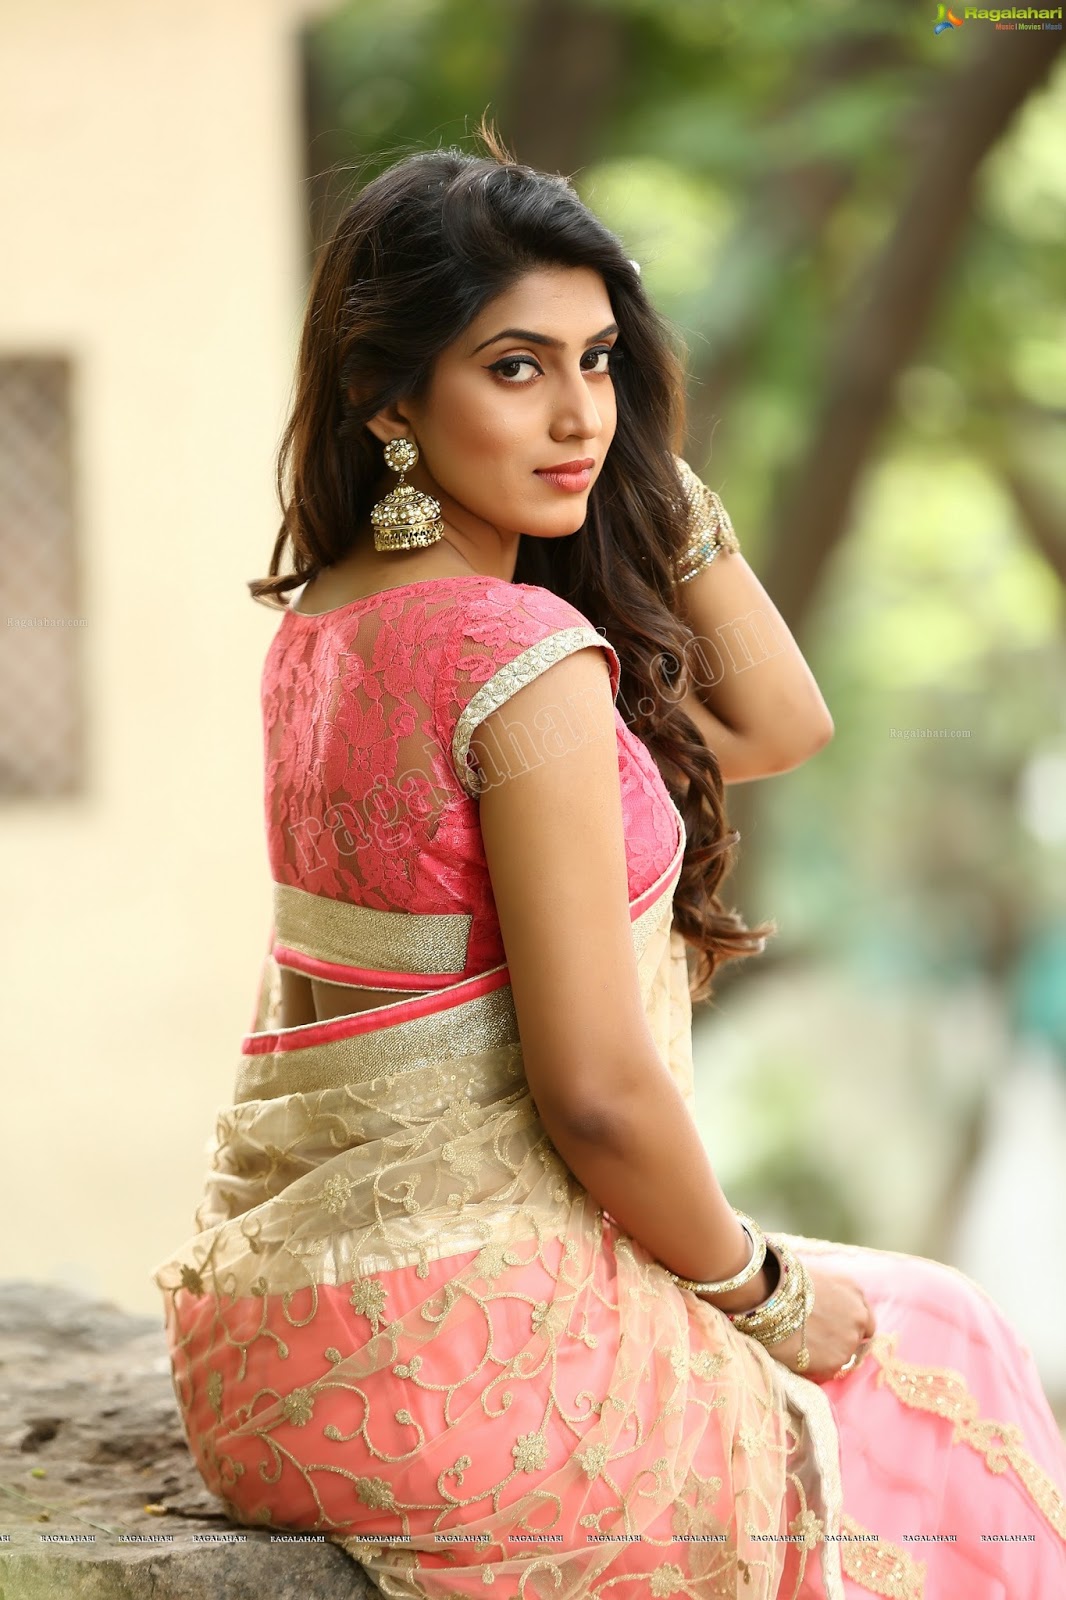 Telugu Actress Hot Photos: Sameera Sherief